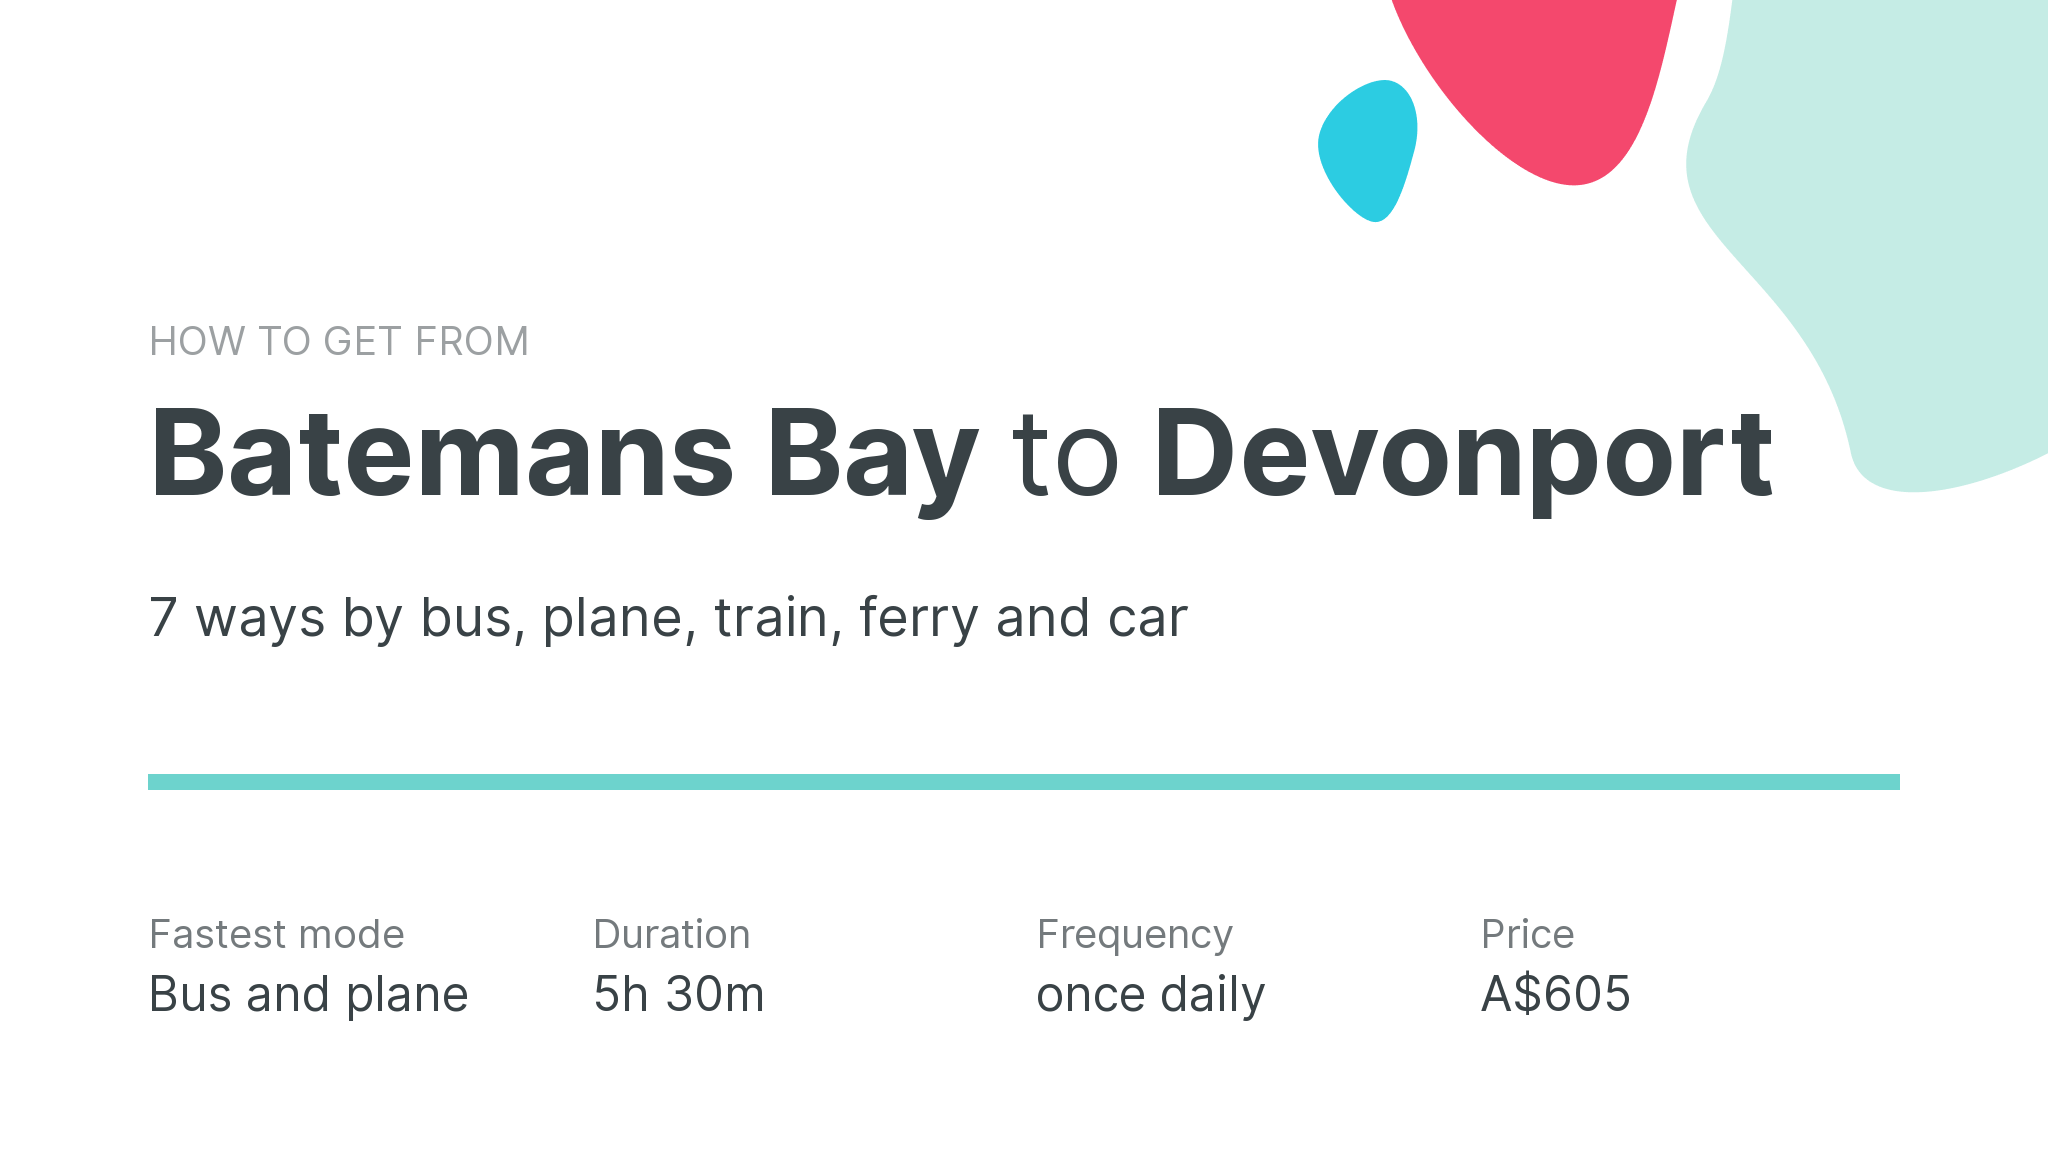 How do I get from Batemans Bay to Devonport